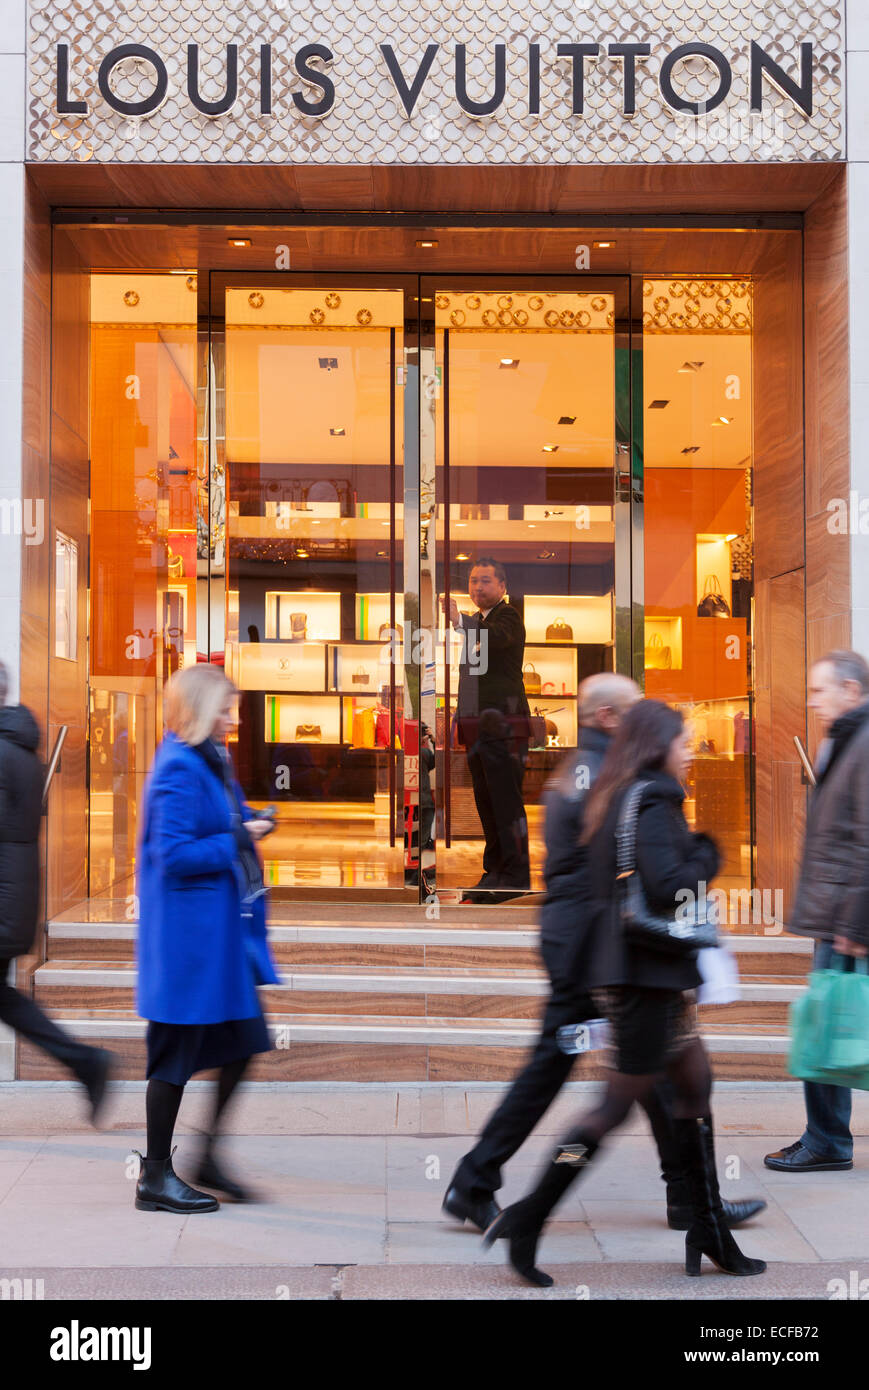 Louis Vuitton fashion store on New Bond Street Stock Photo